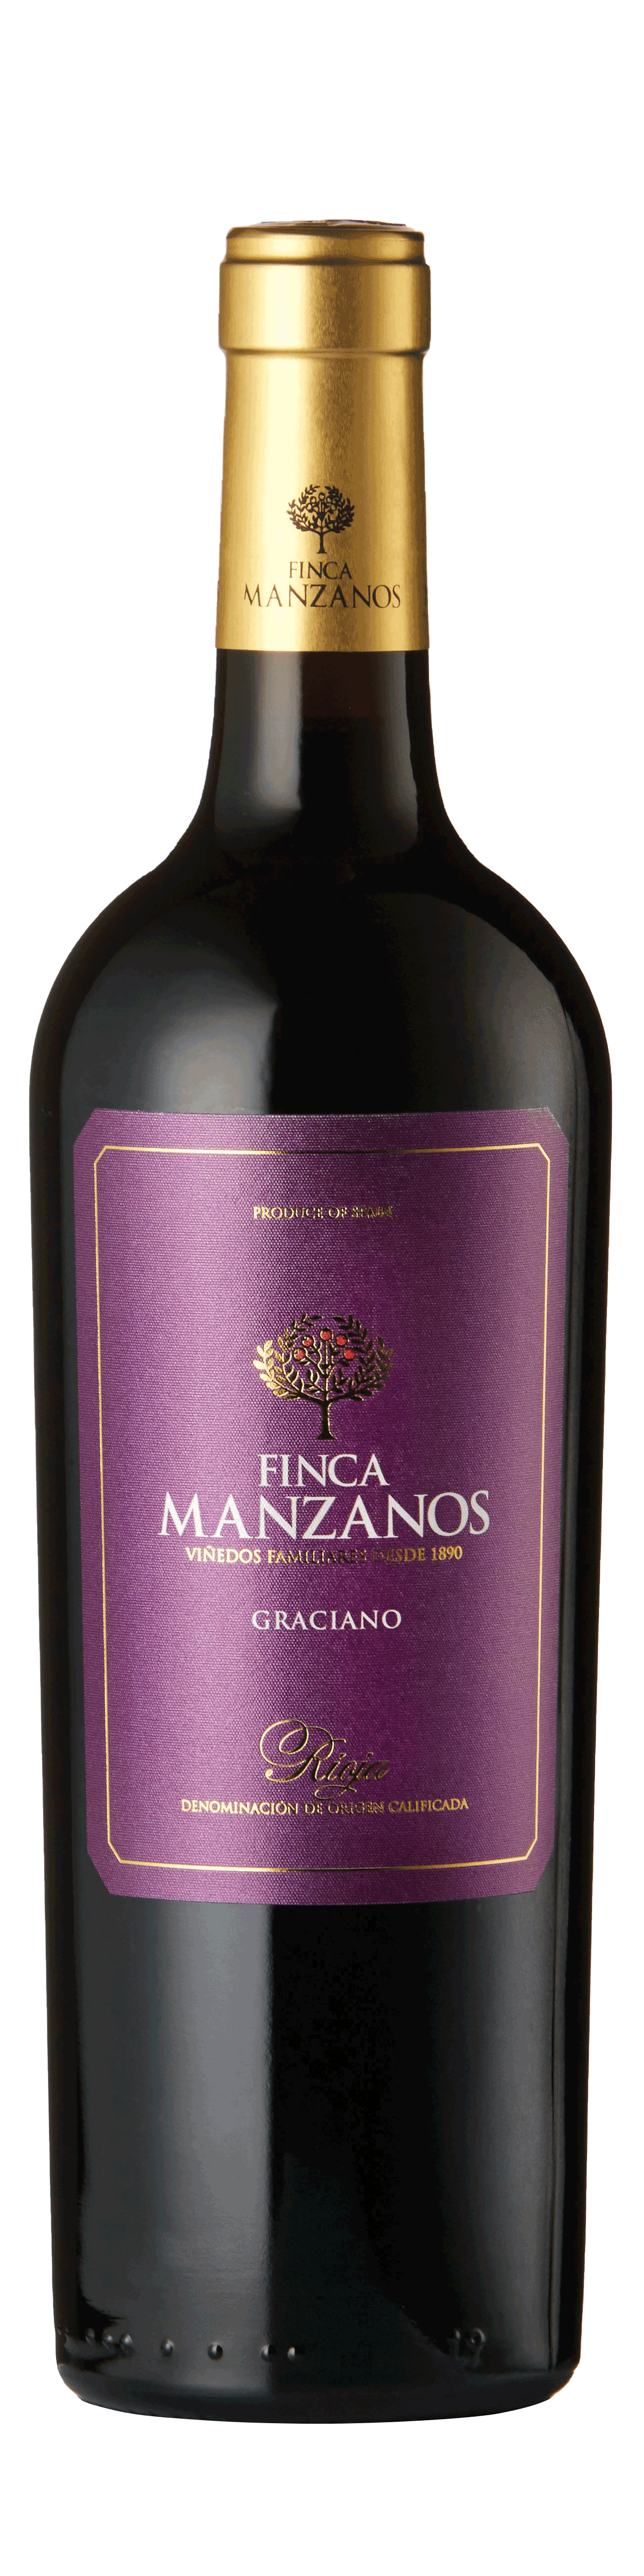 Bottle shot - Bodegas Manzanos, Finca Manzanos Graciano, DOCa Rioja, Spain